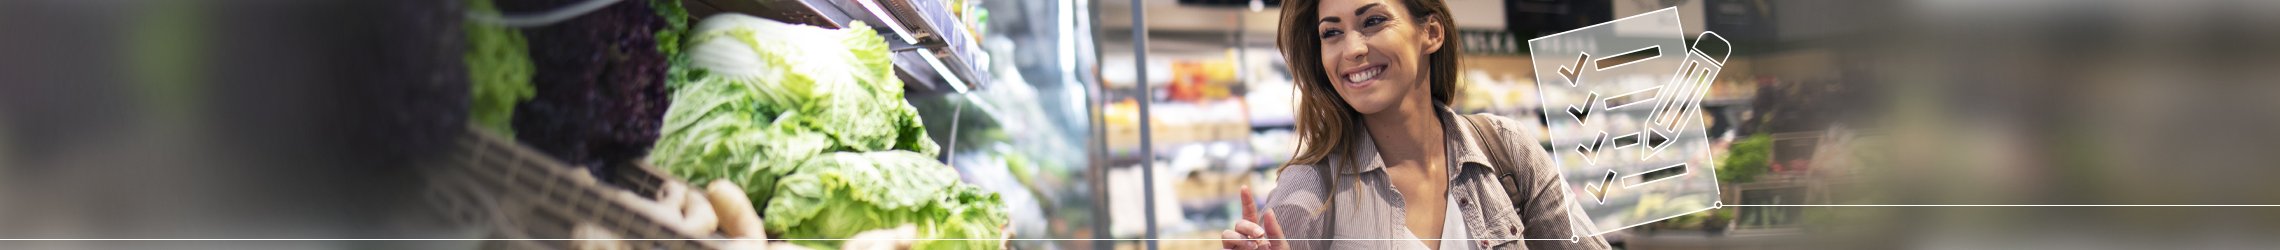 Zur Darstellung des Shopper Insights Trainings zeigt das Bild eine junge Frau, die mit einem Tablet in der Hand vor einem Regal in der Frischeabteilung eines Supermarktes steht